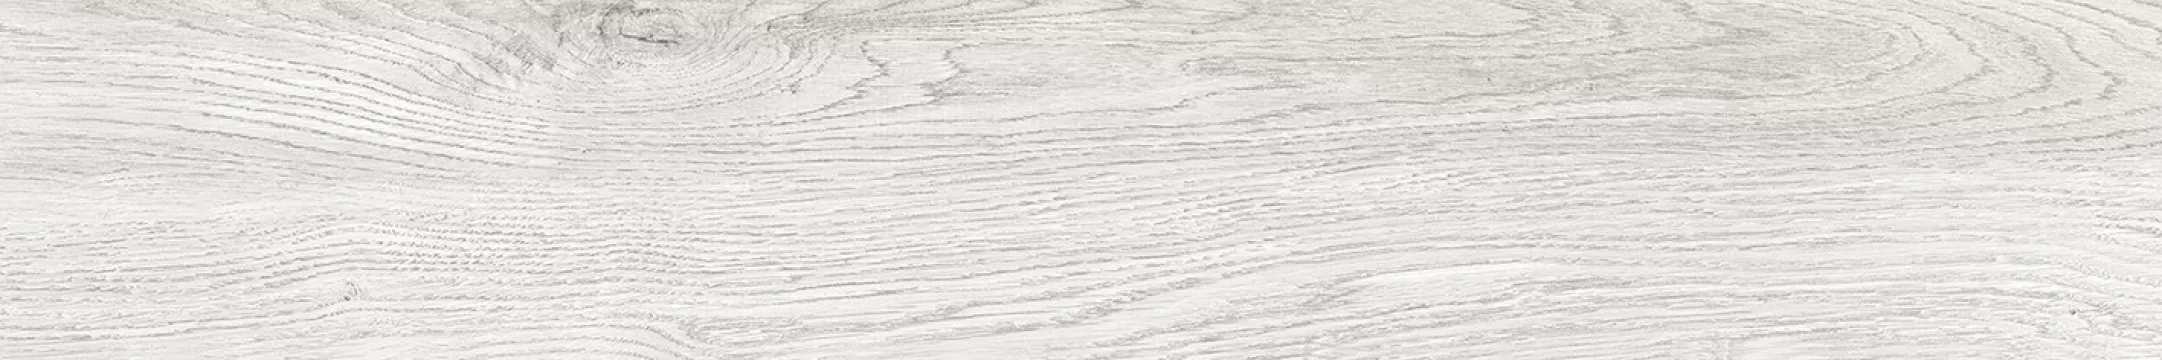 Плитка Laparet 119x20 серый SG517220R Rainwood неполированная матовая глазурованная